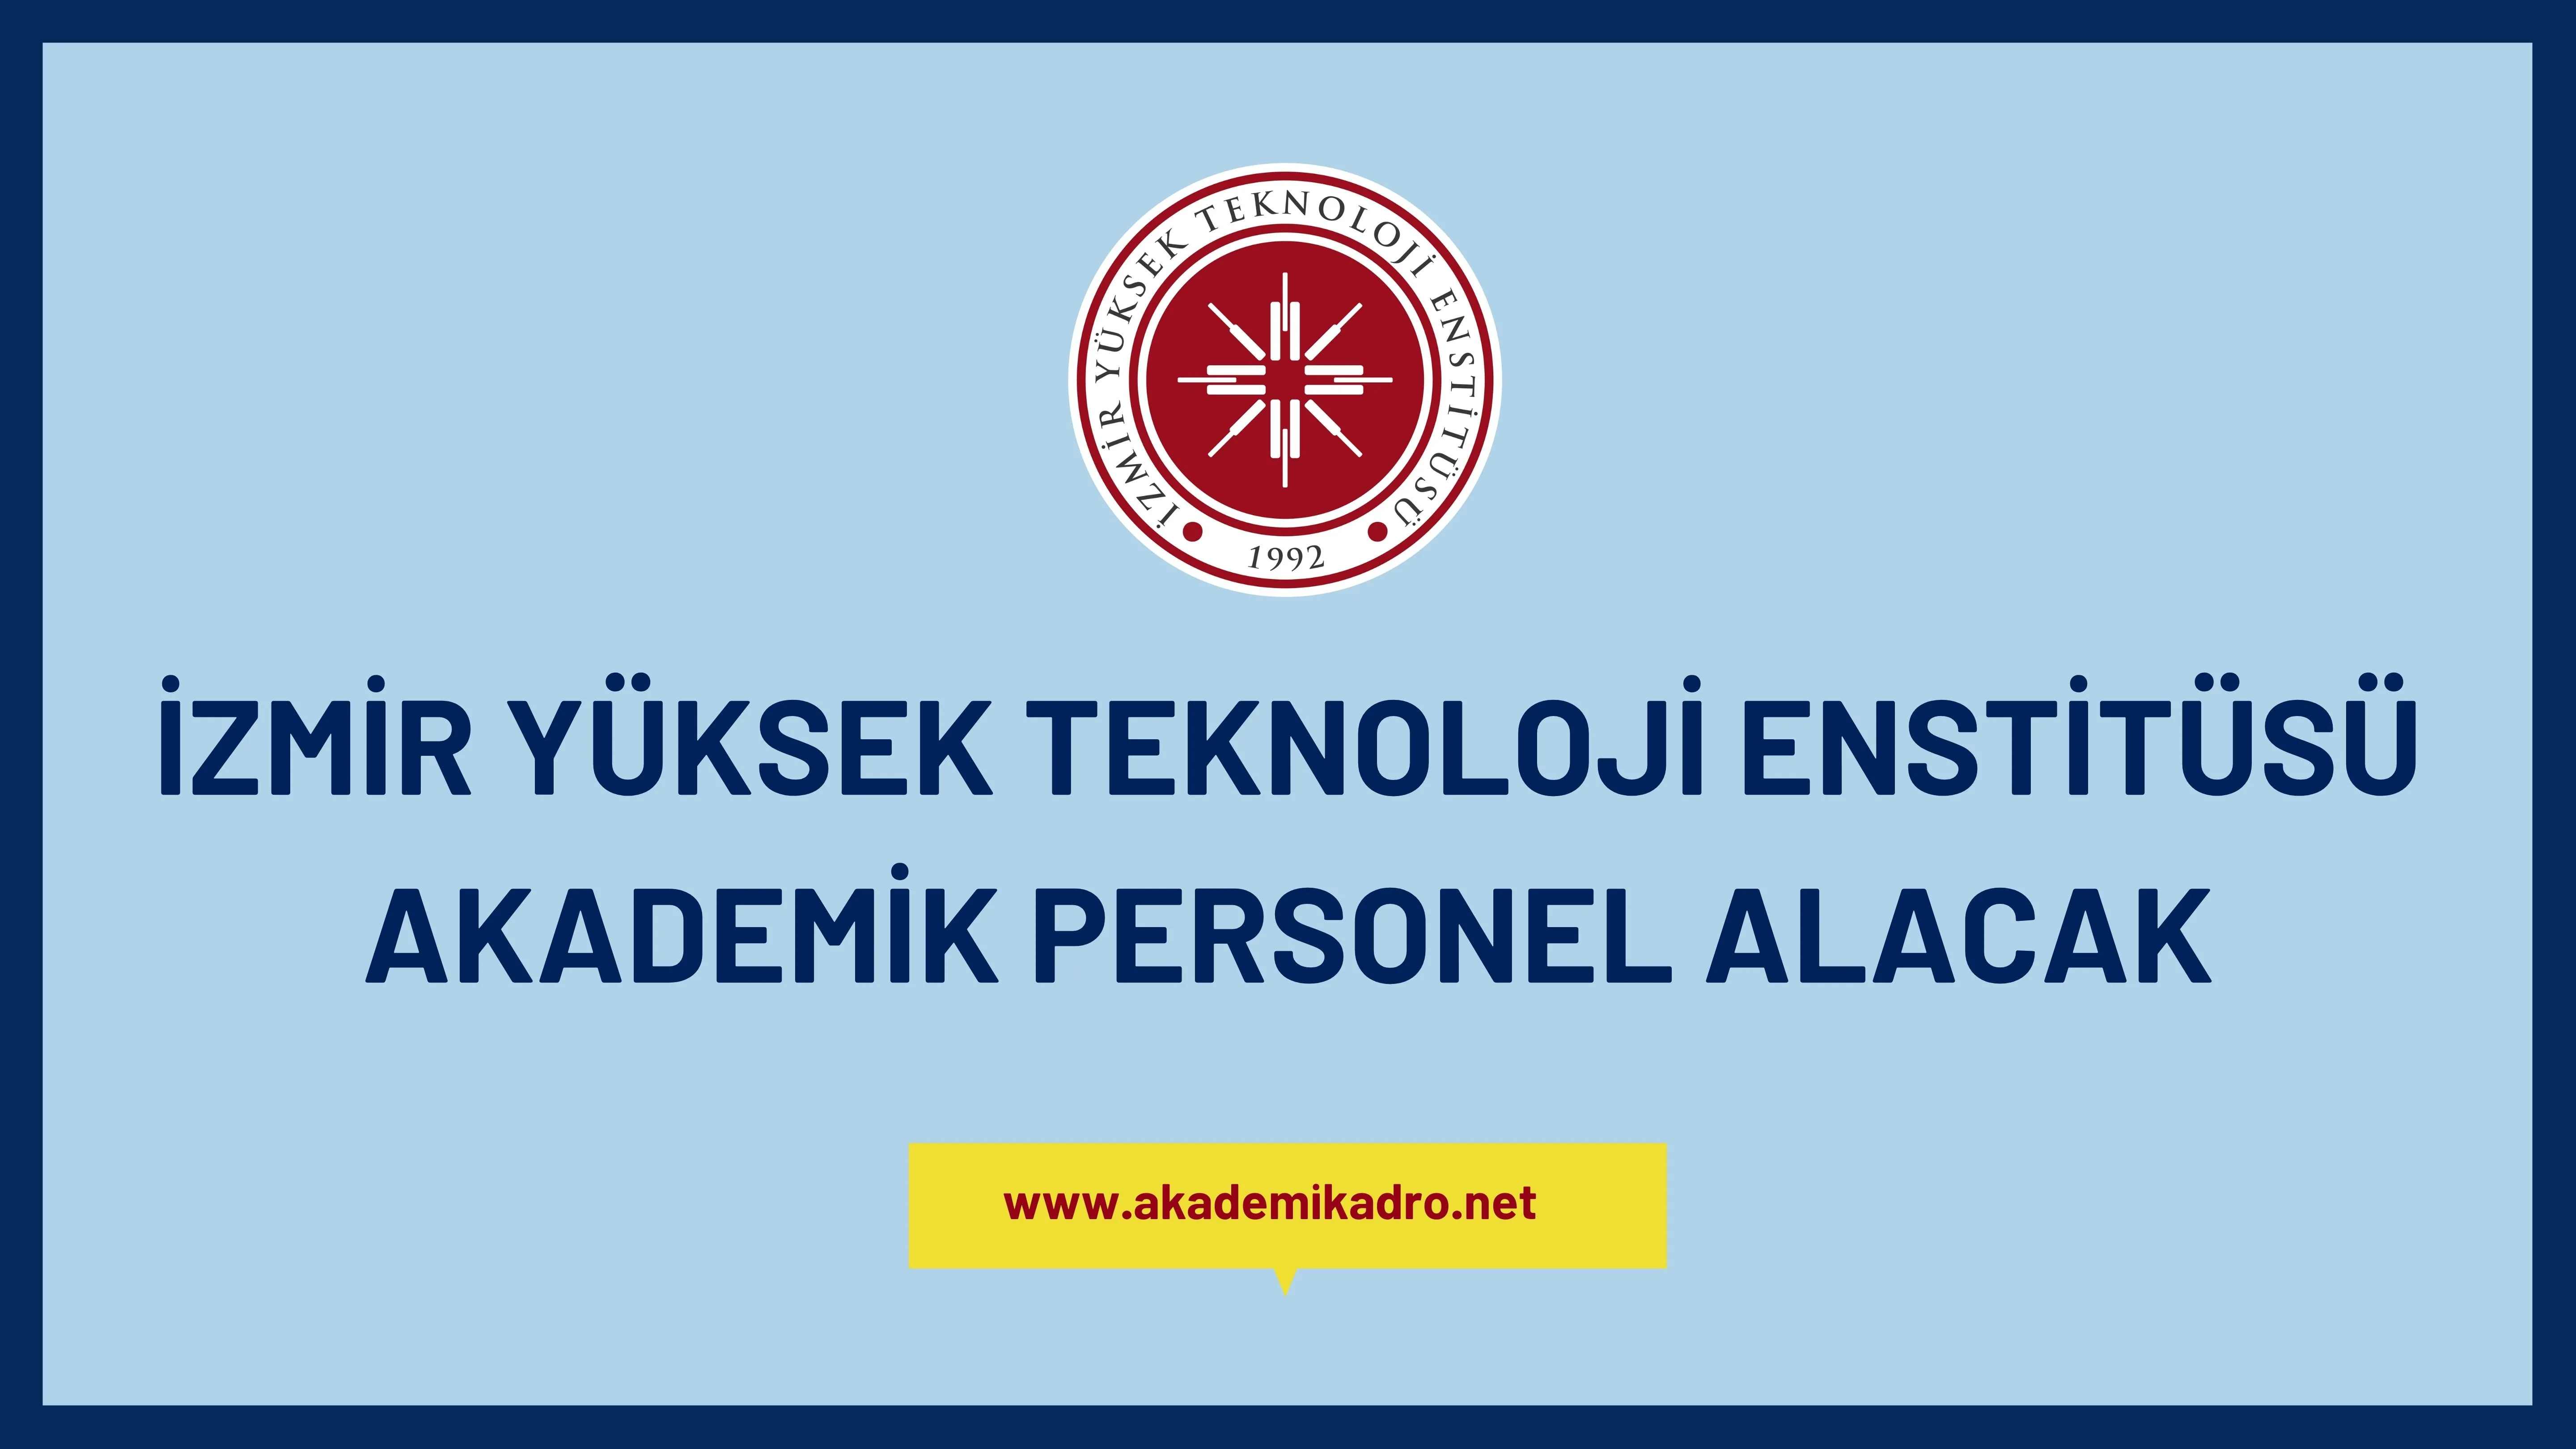 İzmir Yüksek Teknoloji Enstitüsü birçok alandan 11 Akademik personel alacak. Son başvuru tarihi 19 Aralık 2022.